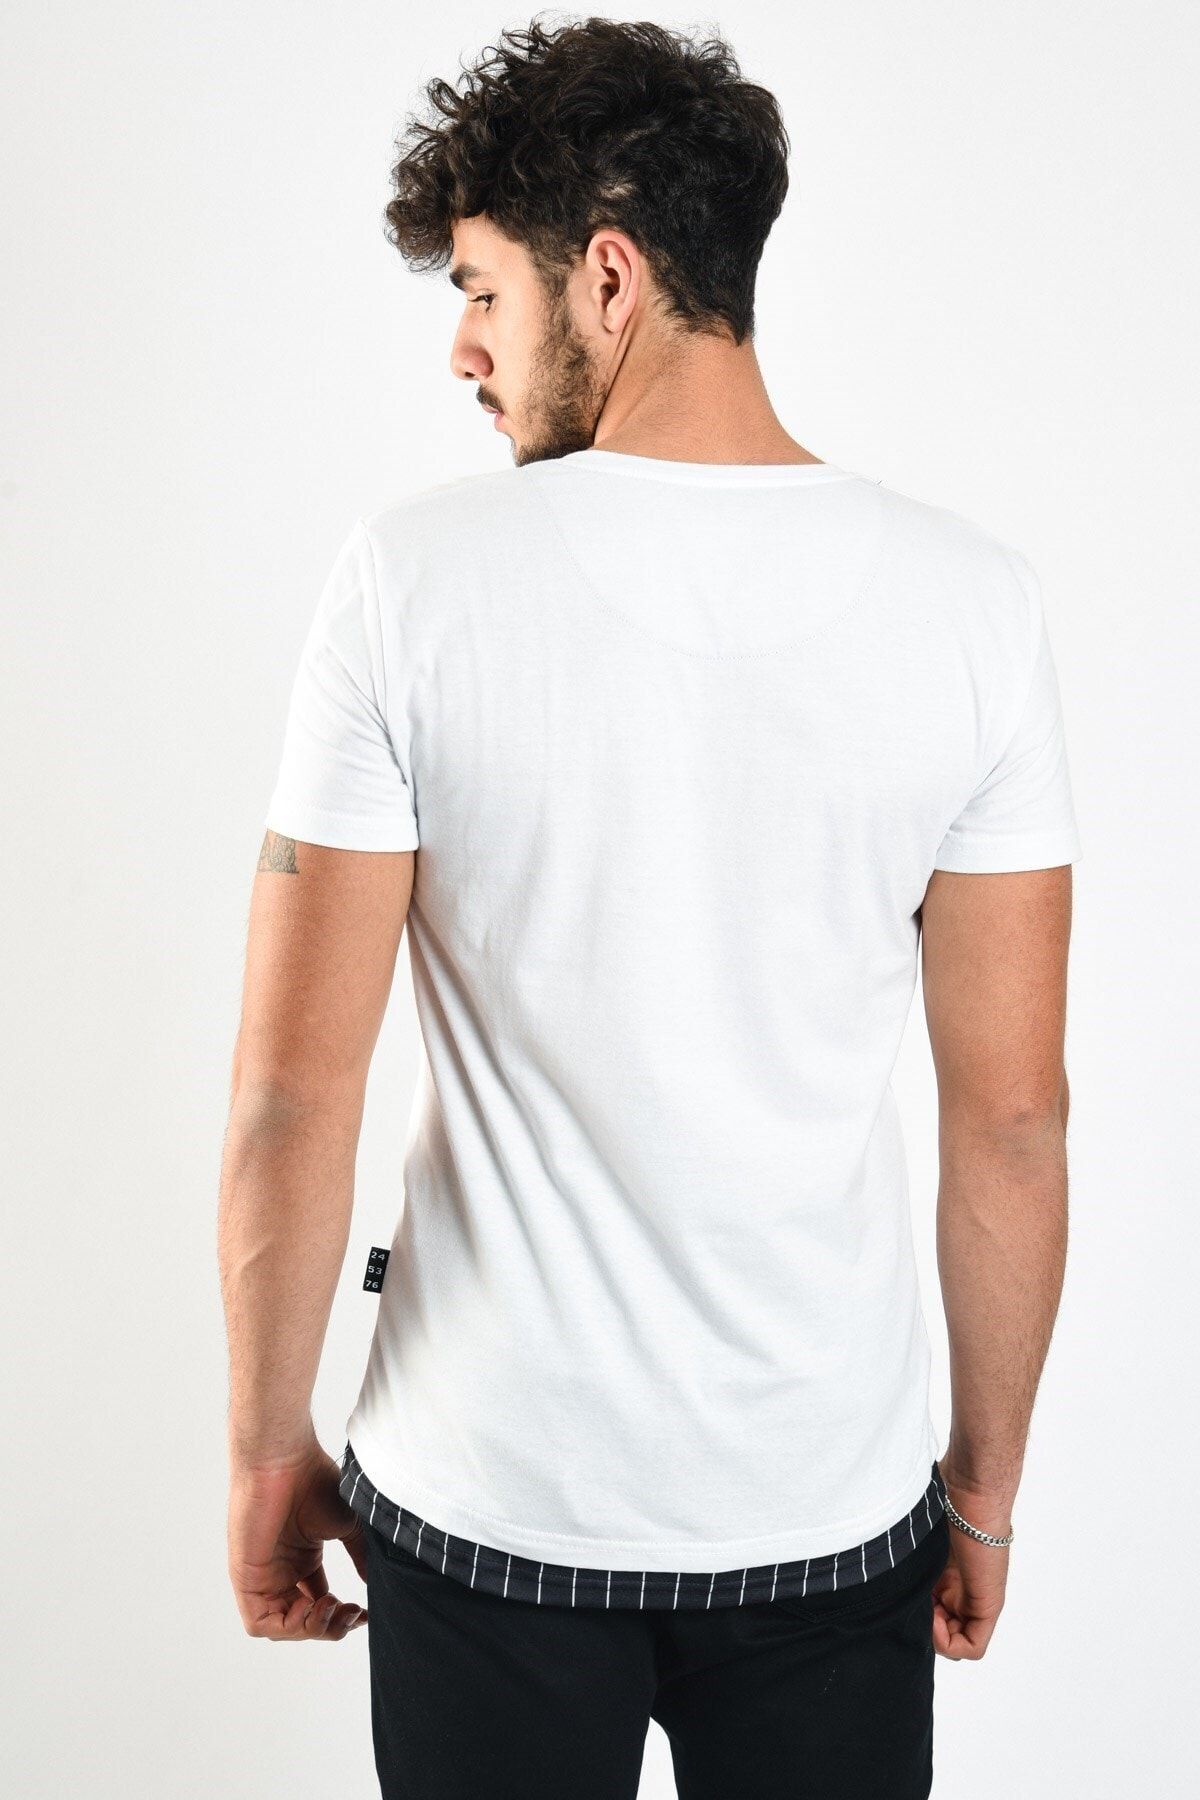 Karpefingo Erkek Etek Garnili Önü Işlemeli Beyaz T-shirt - 46933